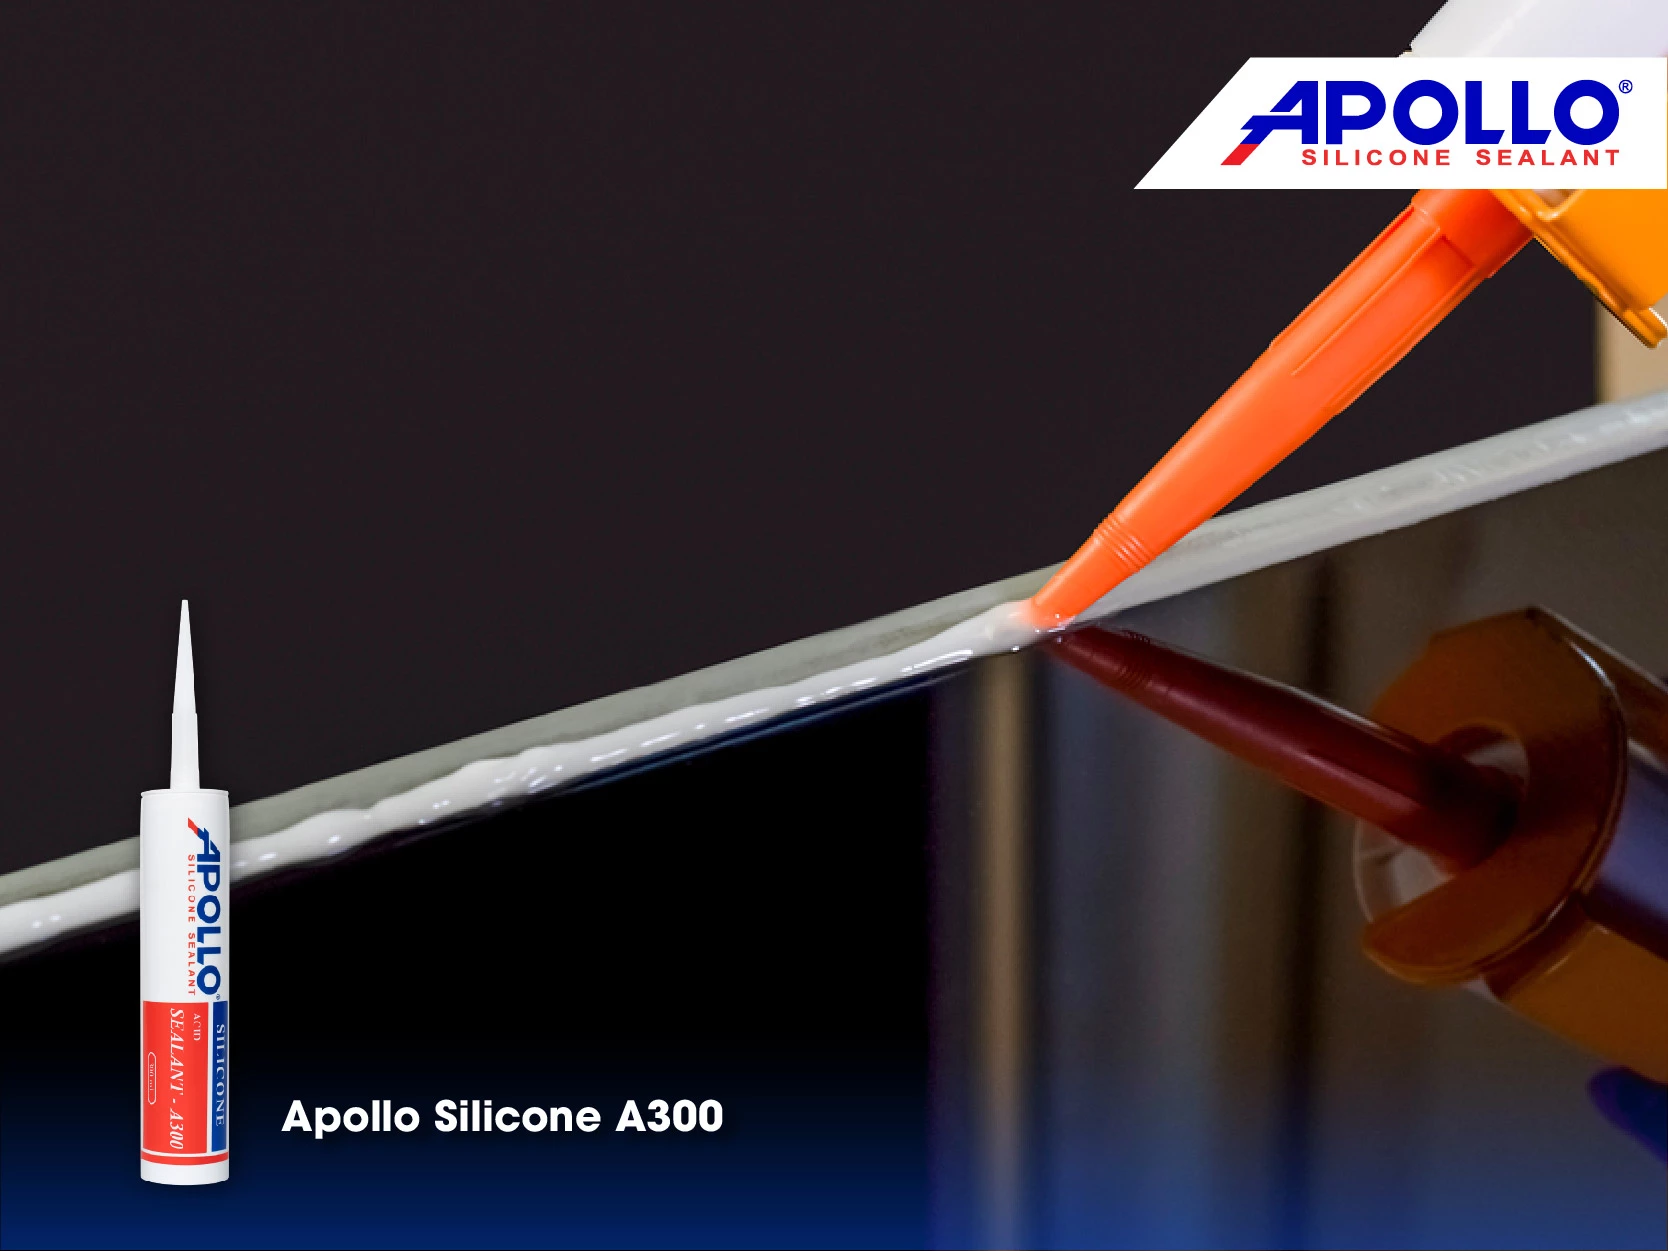 Apollo Silicone A300 được ưu ái gọi là Vua keo kính vì những ưu điểm tuyệt vời khi dùng cho bề mặt kính